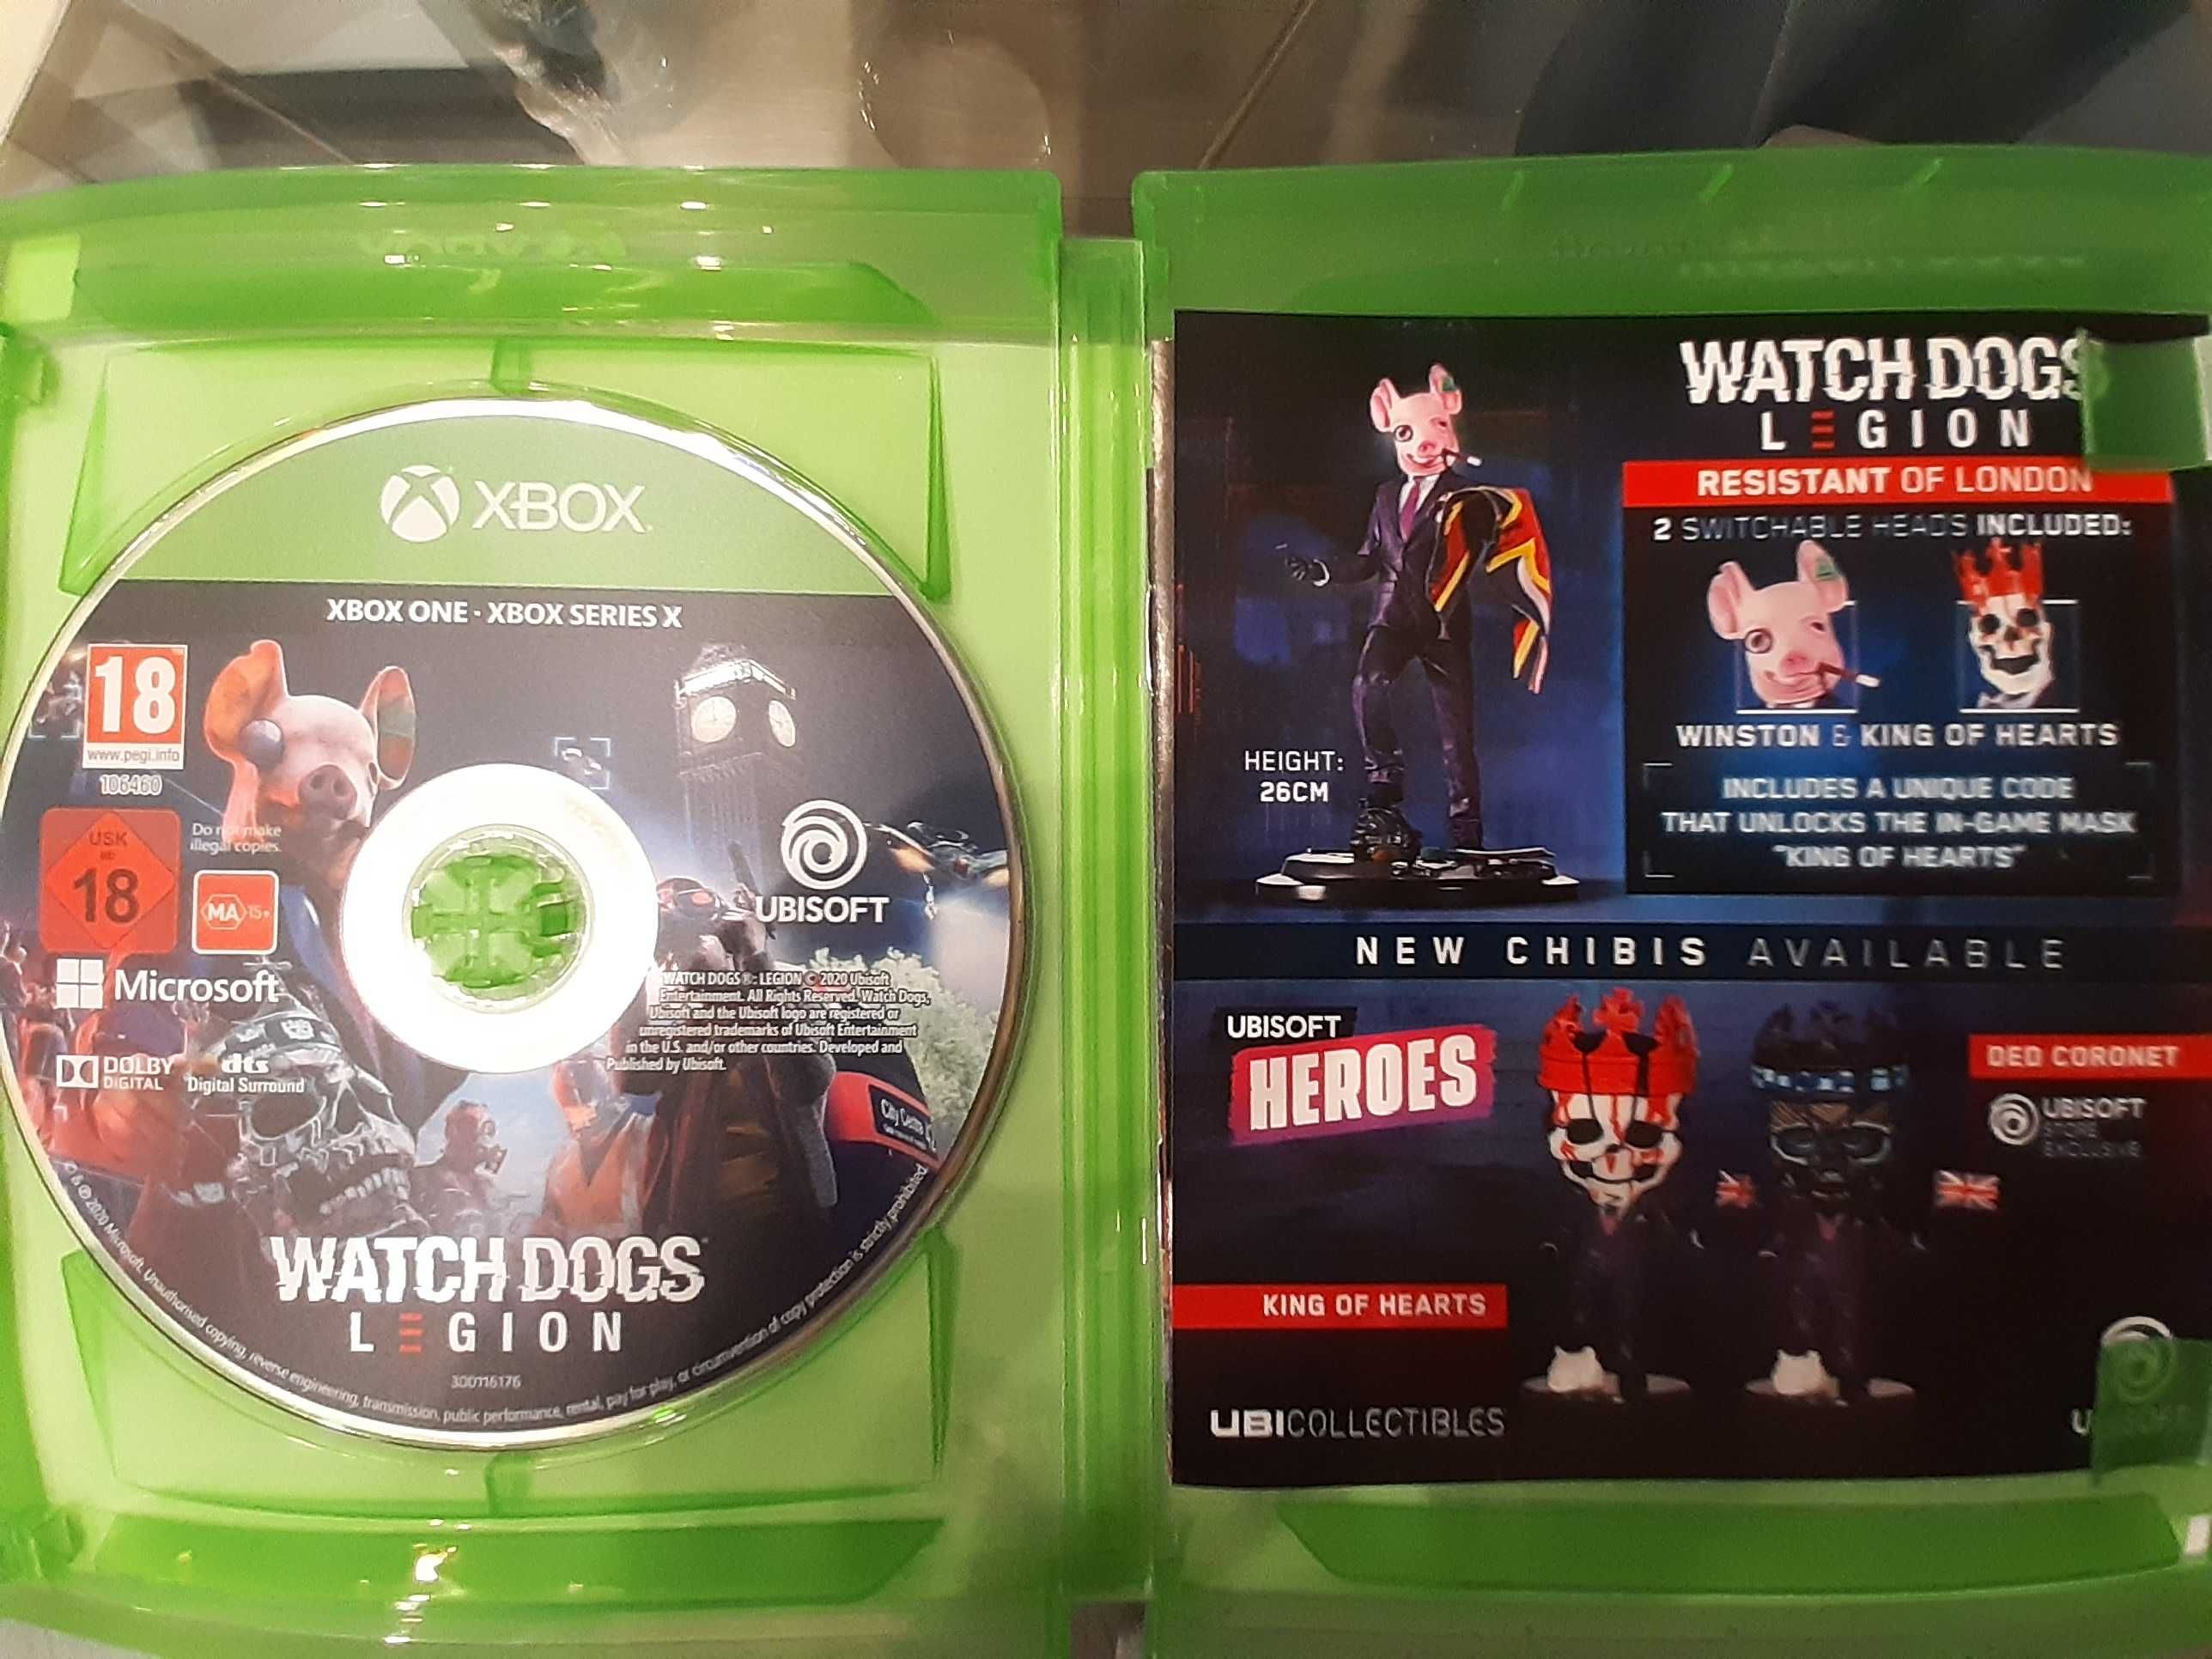 Gra Watch Dogs Legion, Xbox one, Xbox series x, cena 70 zl